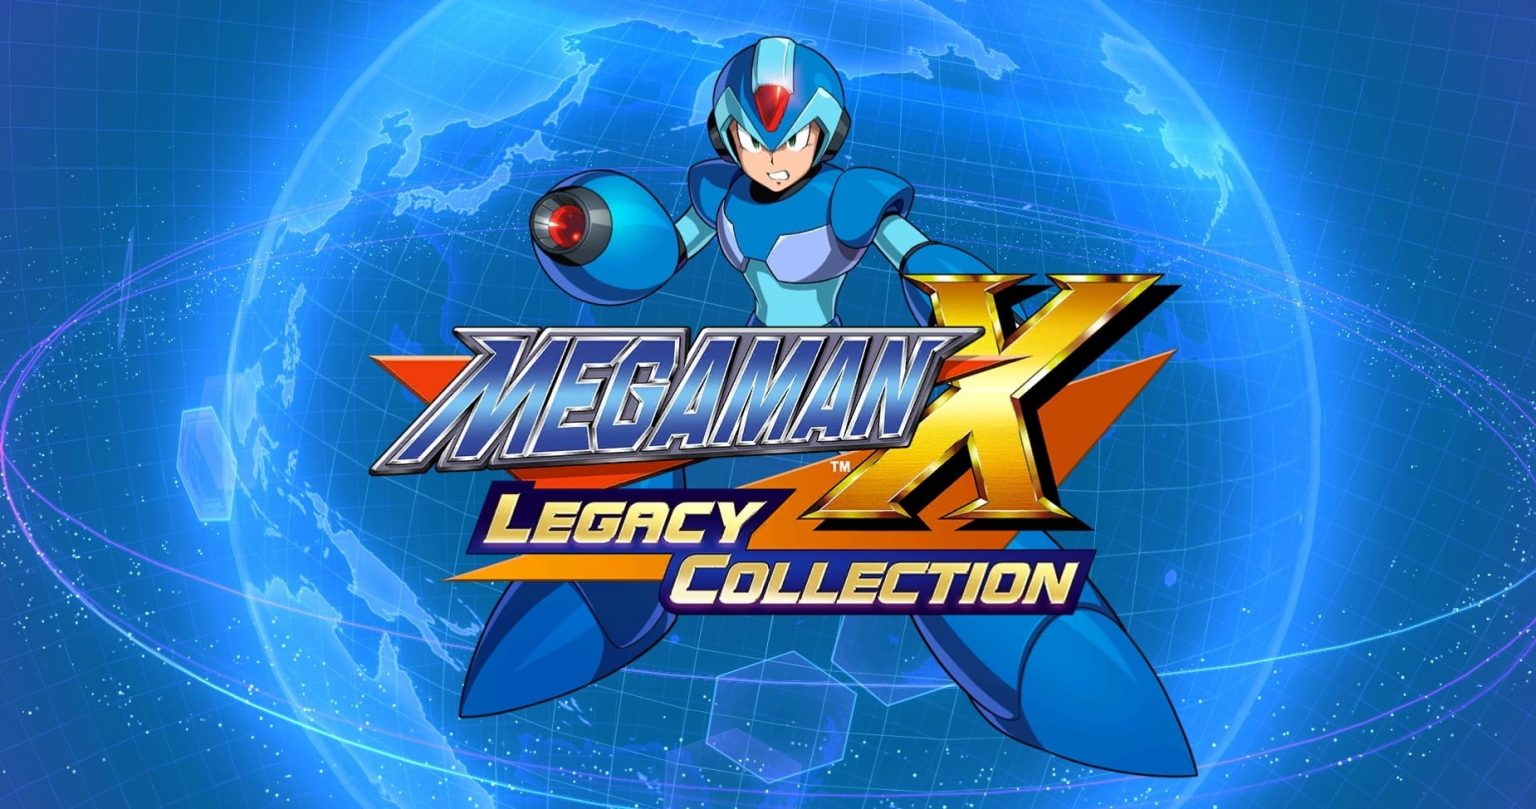 Megaman x5 apk download